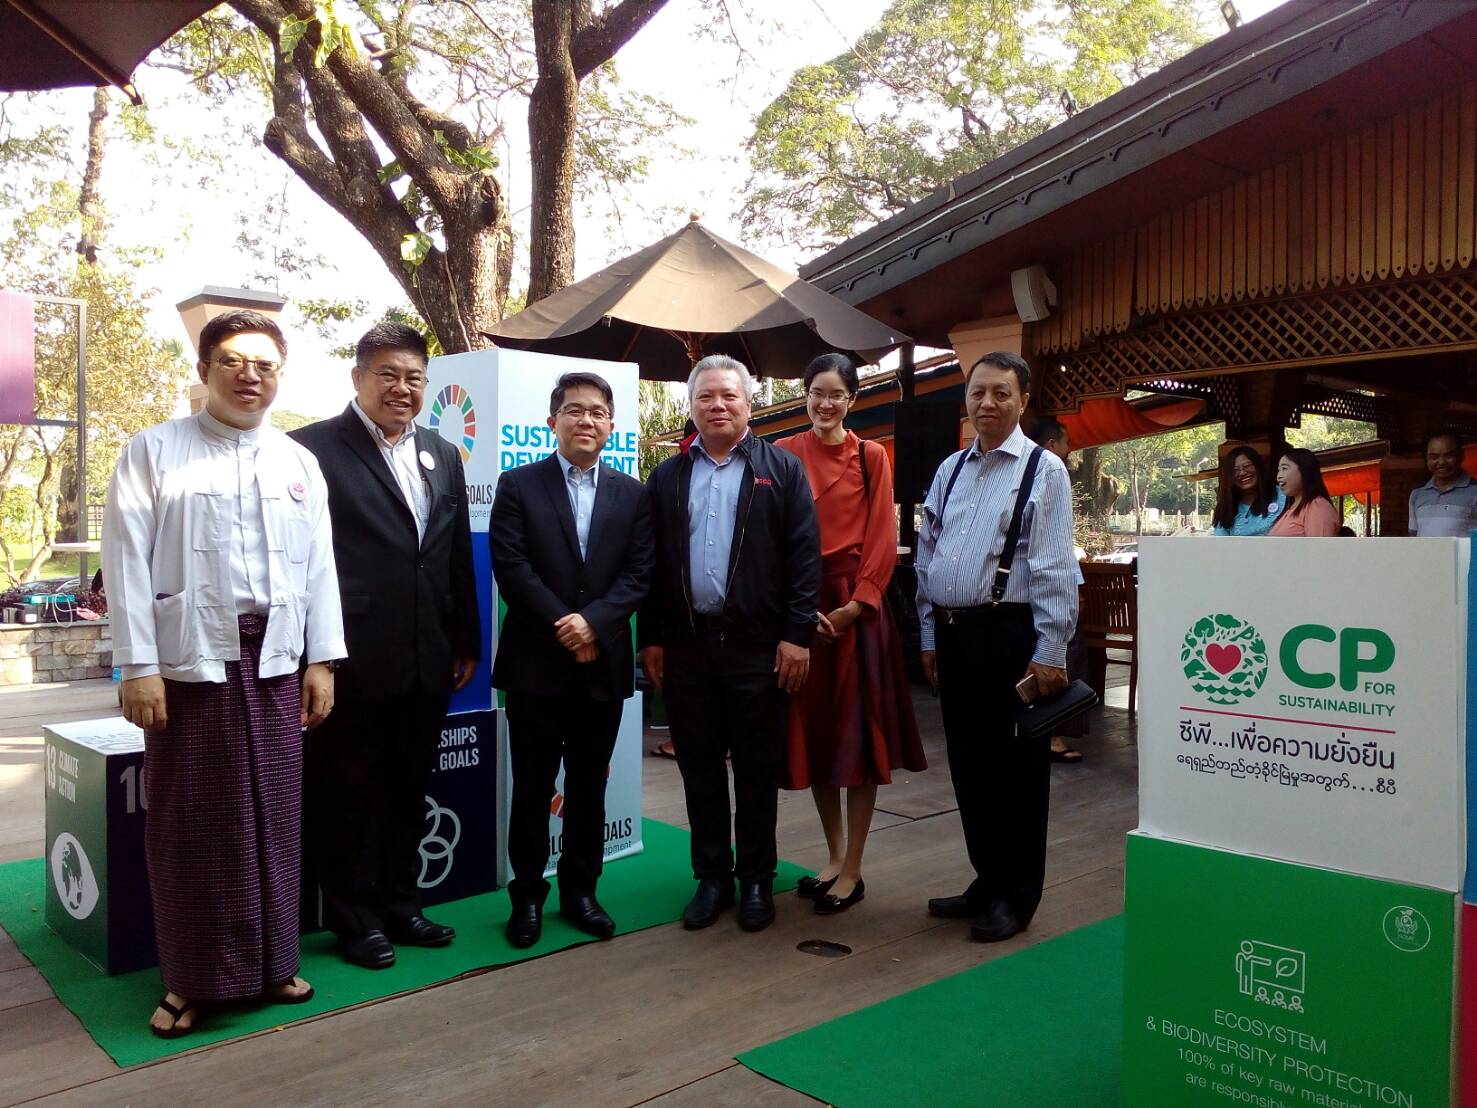 อุปทูต สถานเอกอัครราชทูต ณ กรุงย่างกุ้ง  เข้าร่วมกิจกรรม “Myanmar CP Sustainable Development Goal”